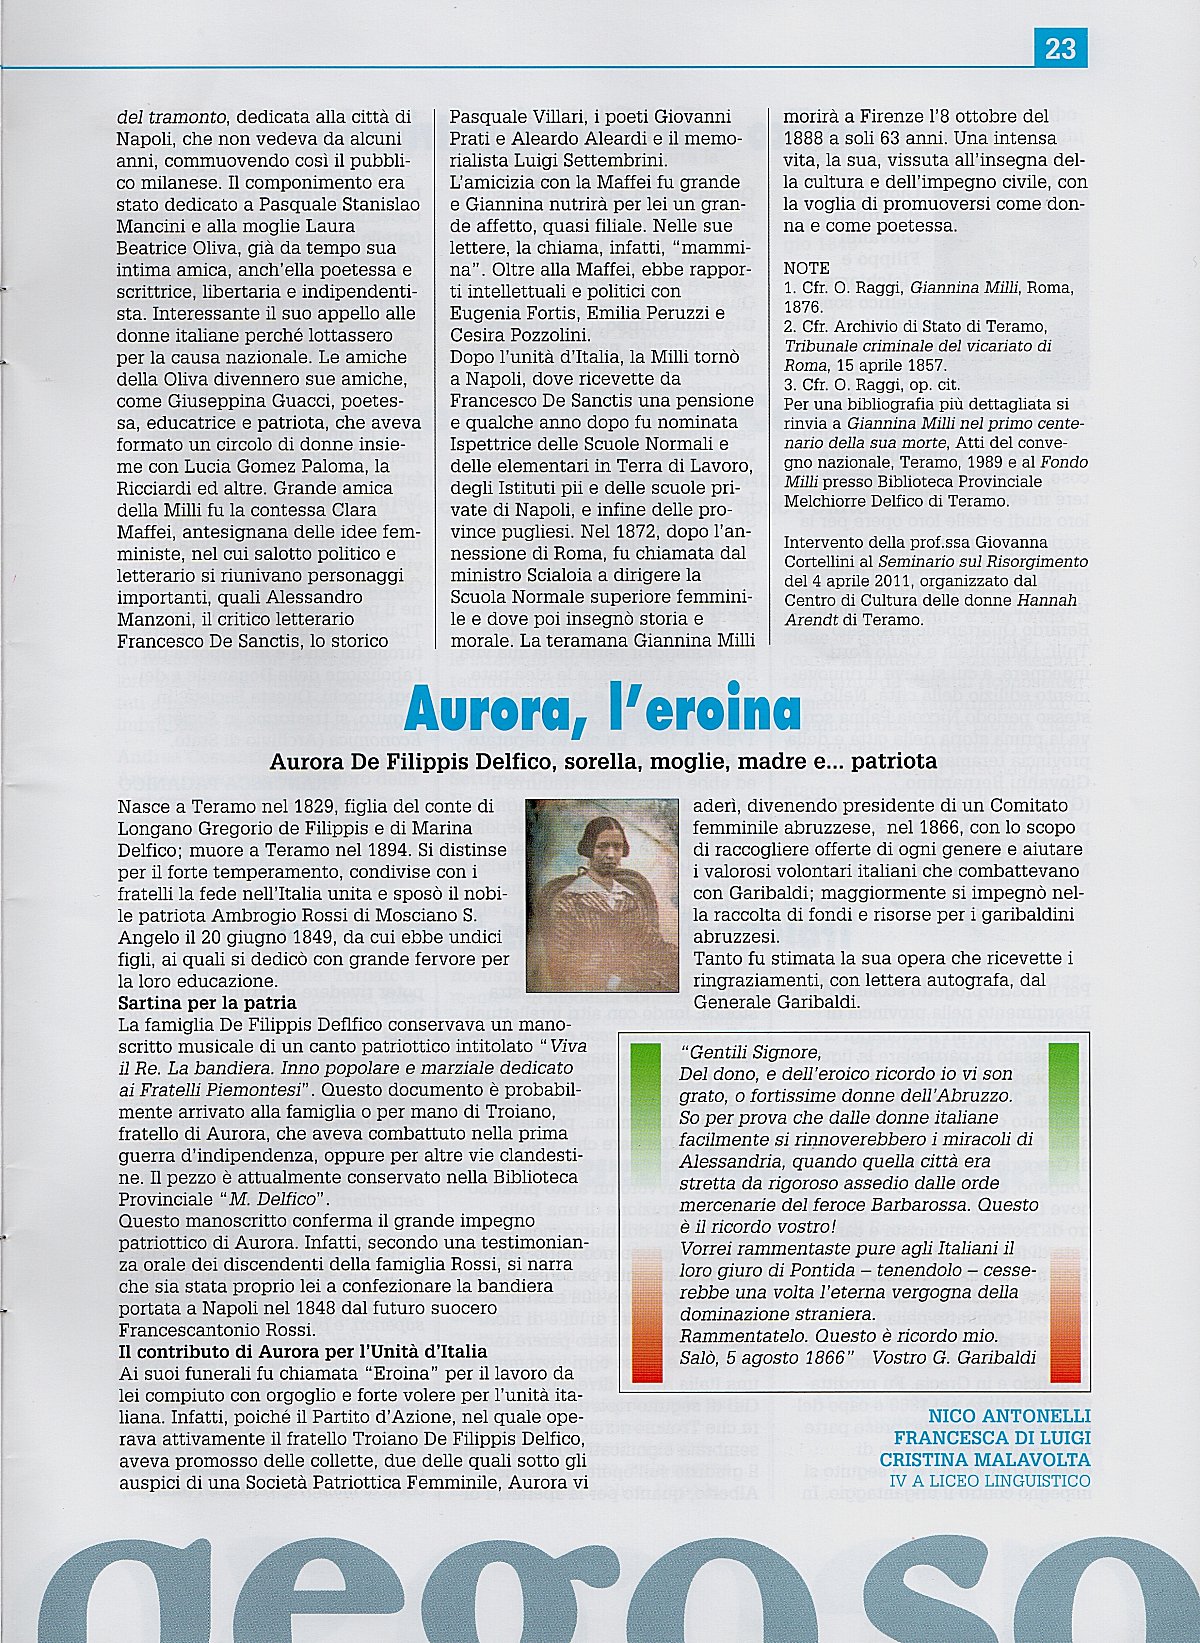 "Pegaso", n.15 / 21 maggio 2011, pag. 23